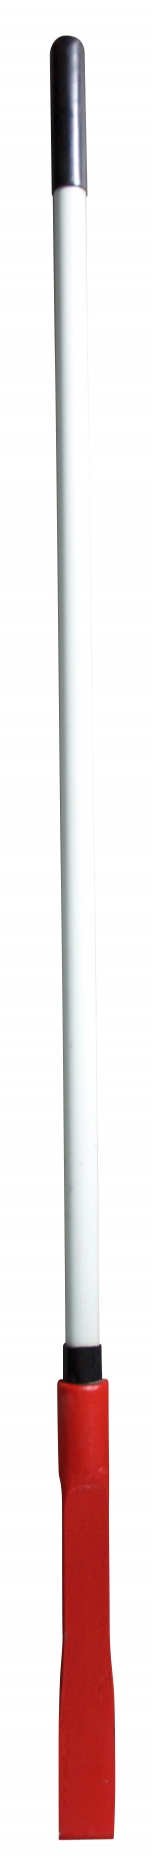 Breekstang rond Ã 32 mm fiber steel - vierkantig + beitel - 1400 mm